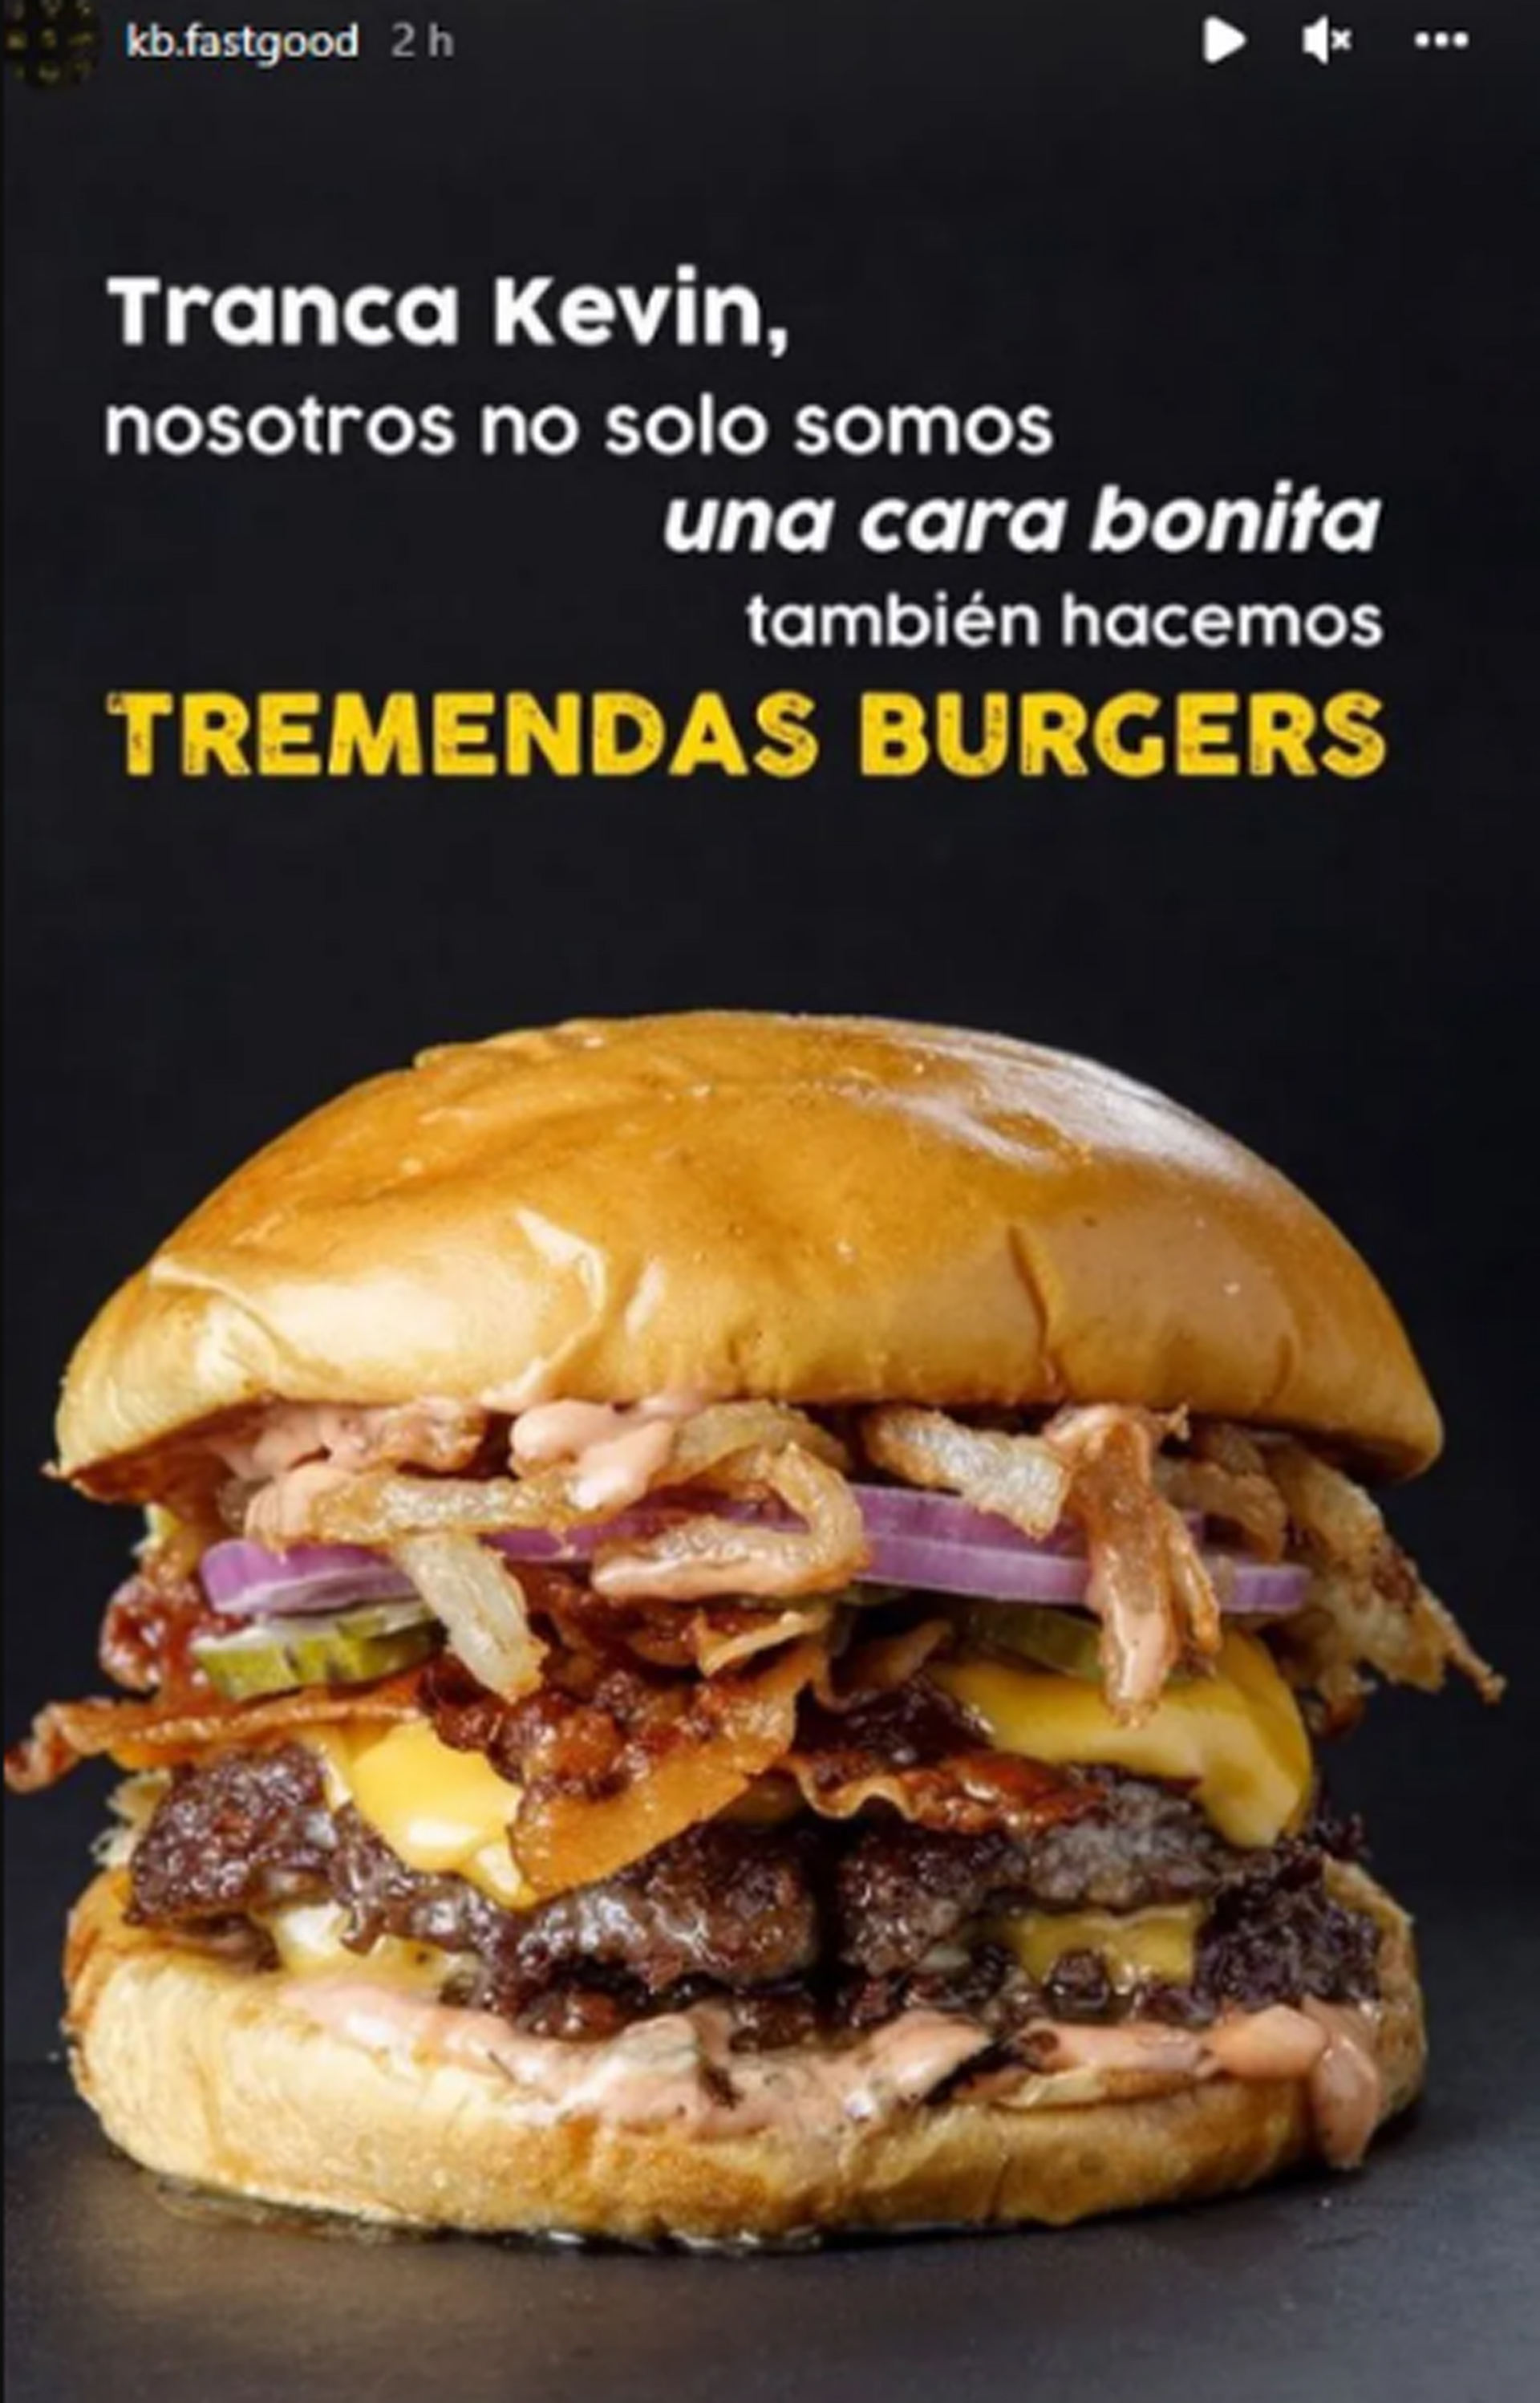 La Instagram Story que publicó el local de hamburguesas luego de cambiar su nombre (Foto: Instagram)